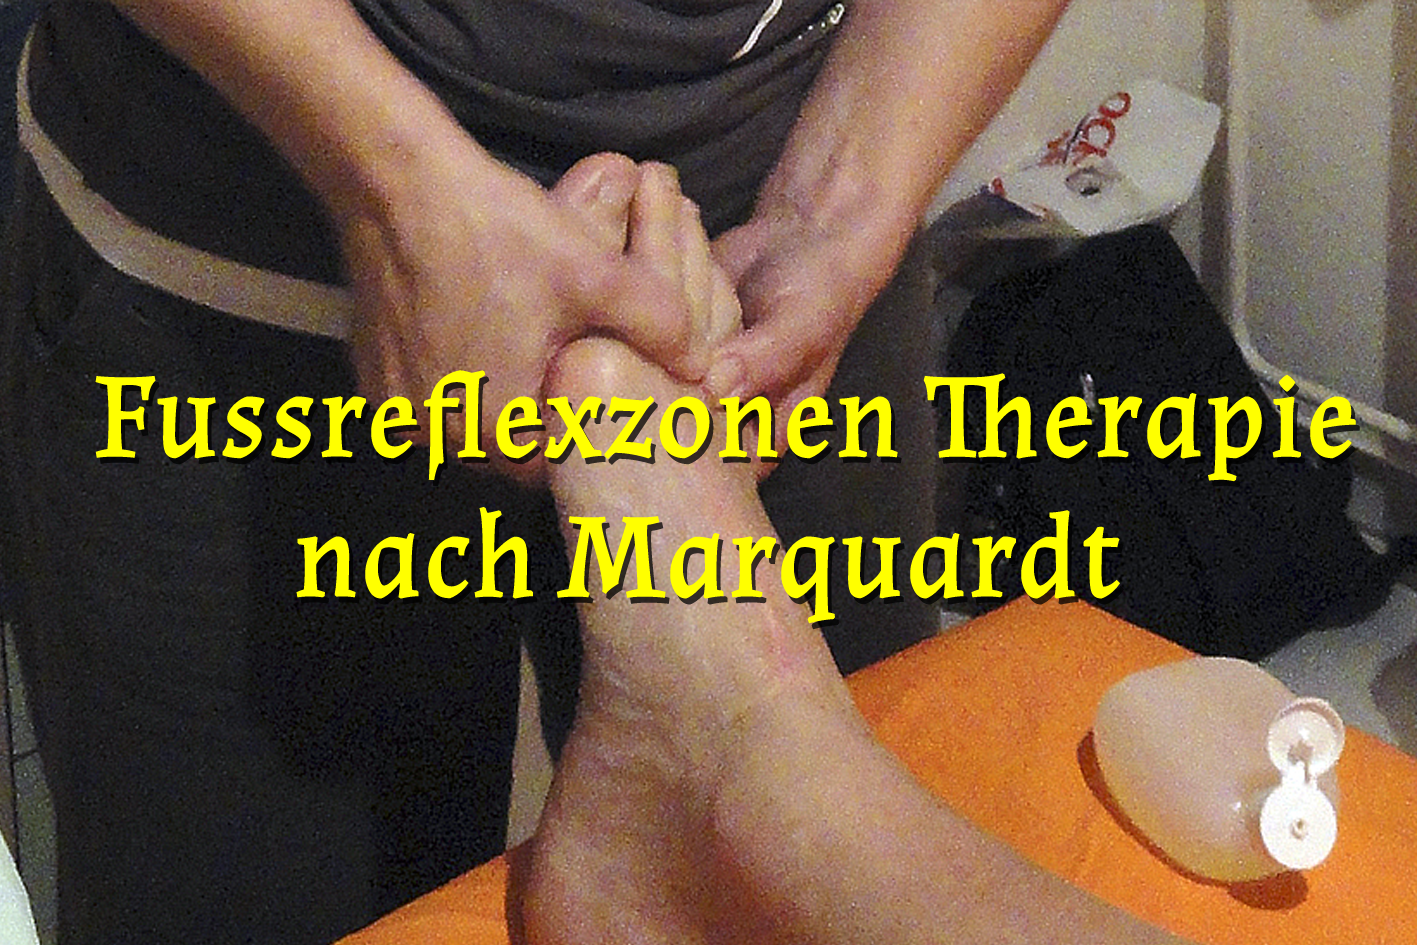 Fussreflexzonen Therapie nach Marquardt